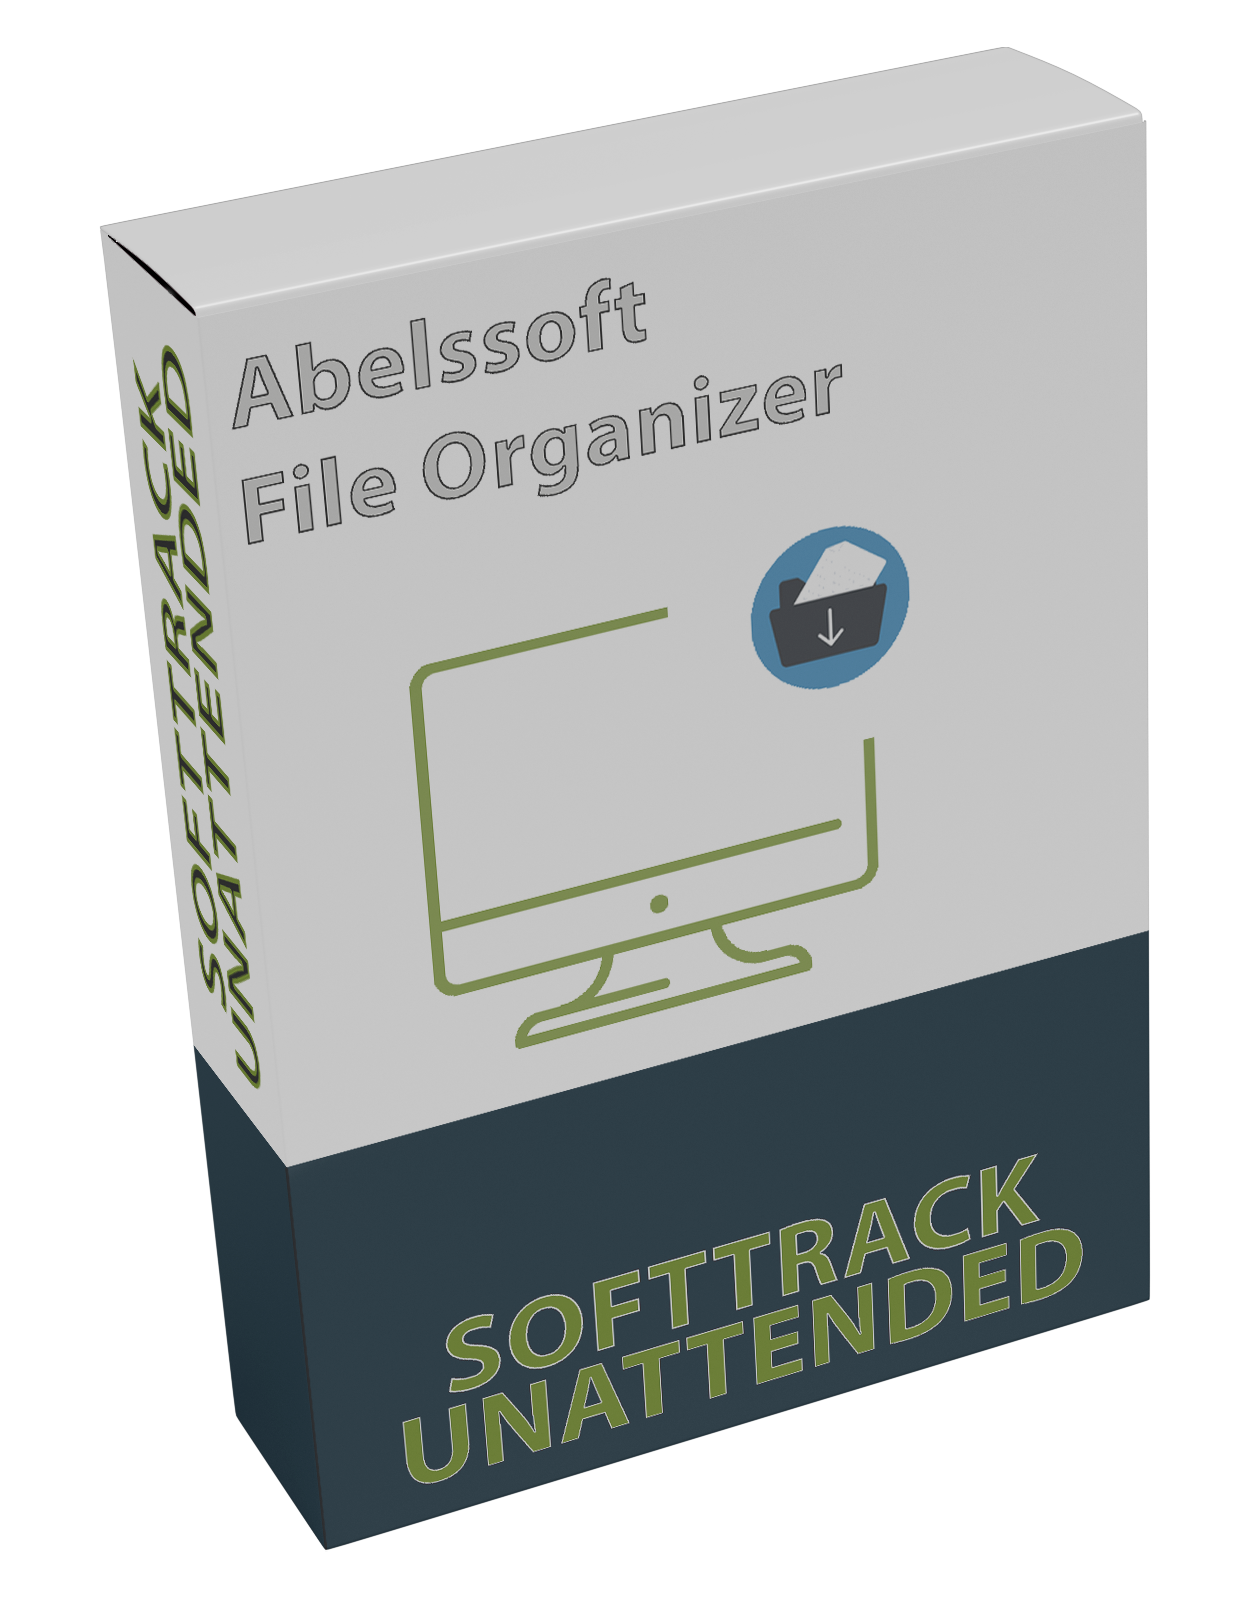 Abelssoft File Organizer 2022 v4.02.32457 UNATTENDED